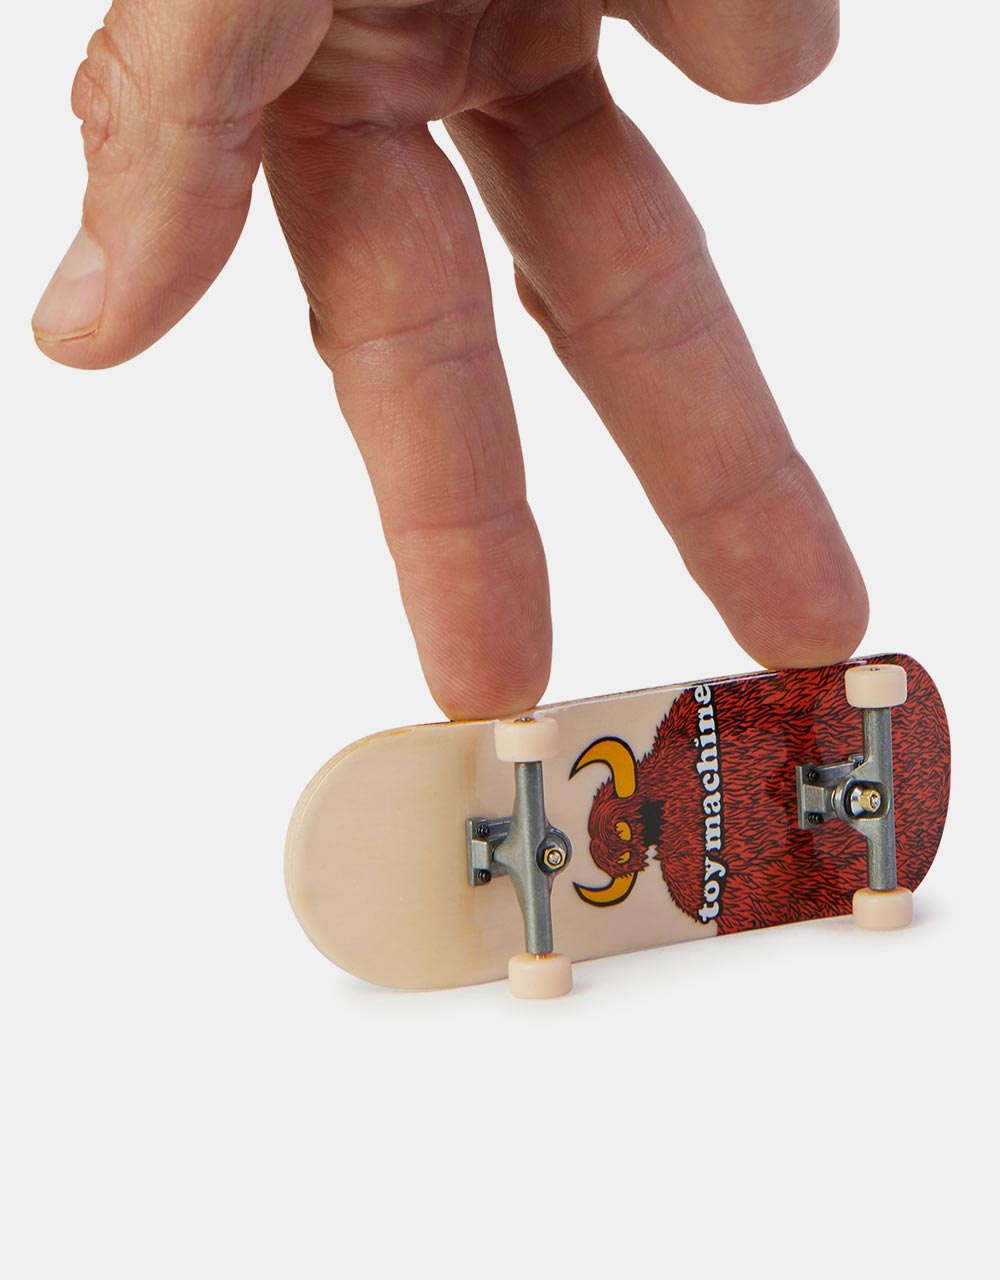 Tech Deck Fingerboard Performance Wood Board - Toy Machine